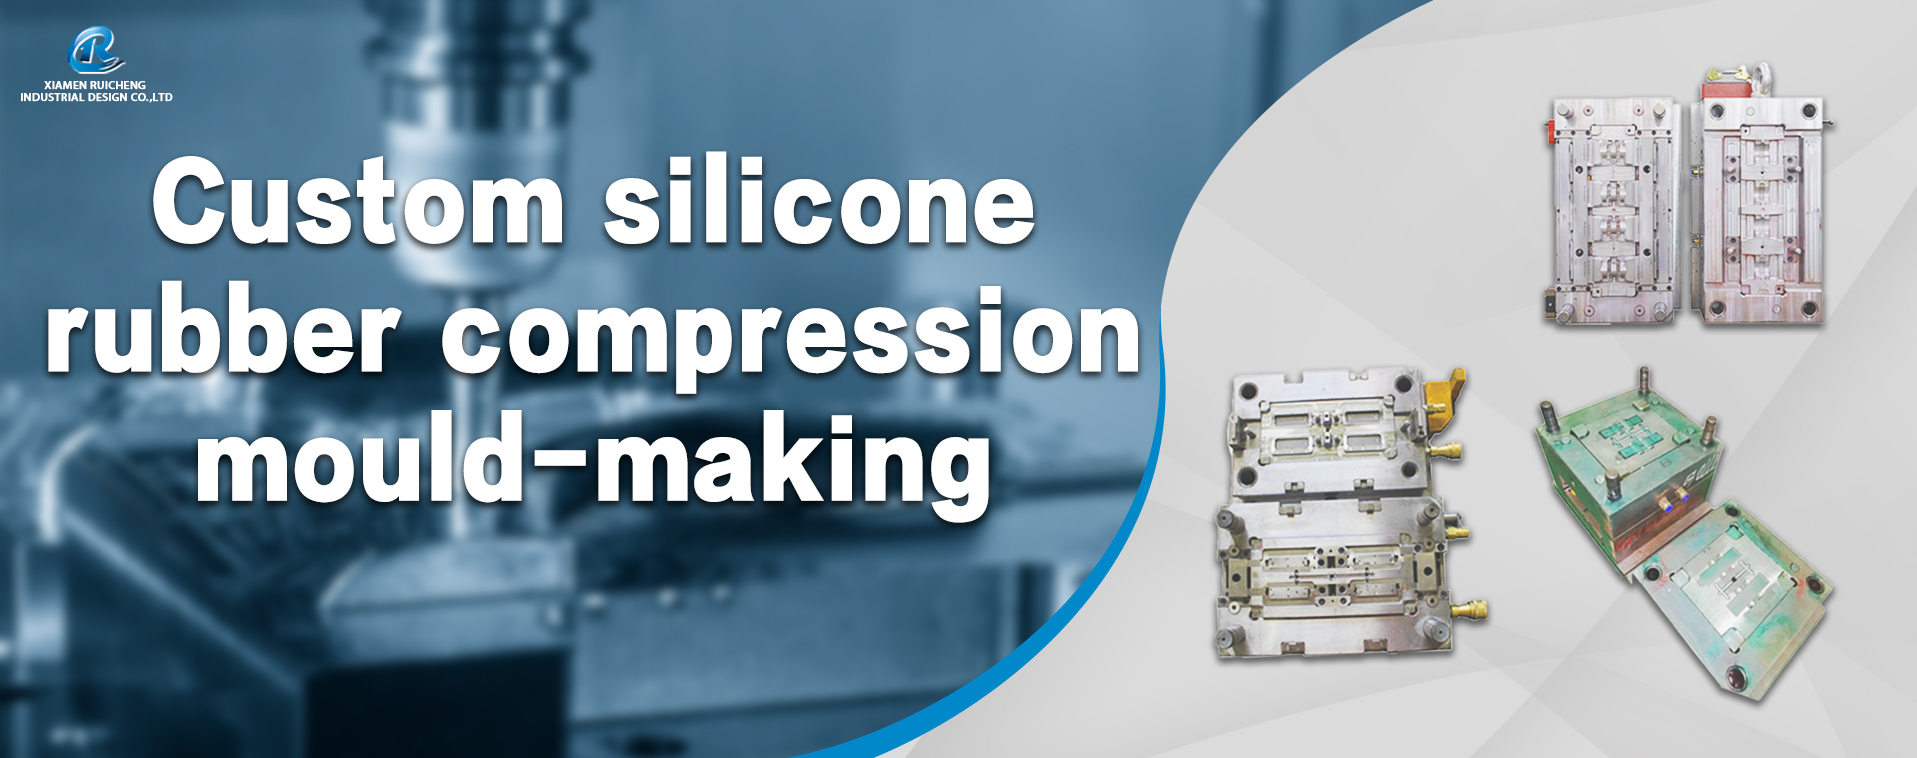 silicone rubber compression mold-making